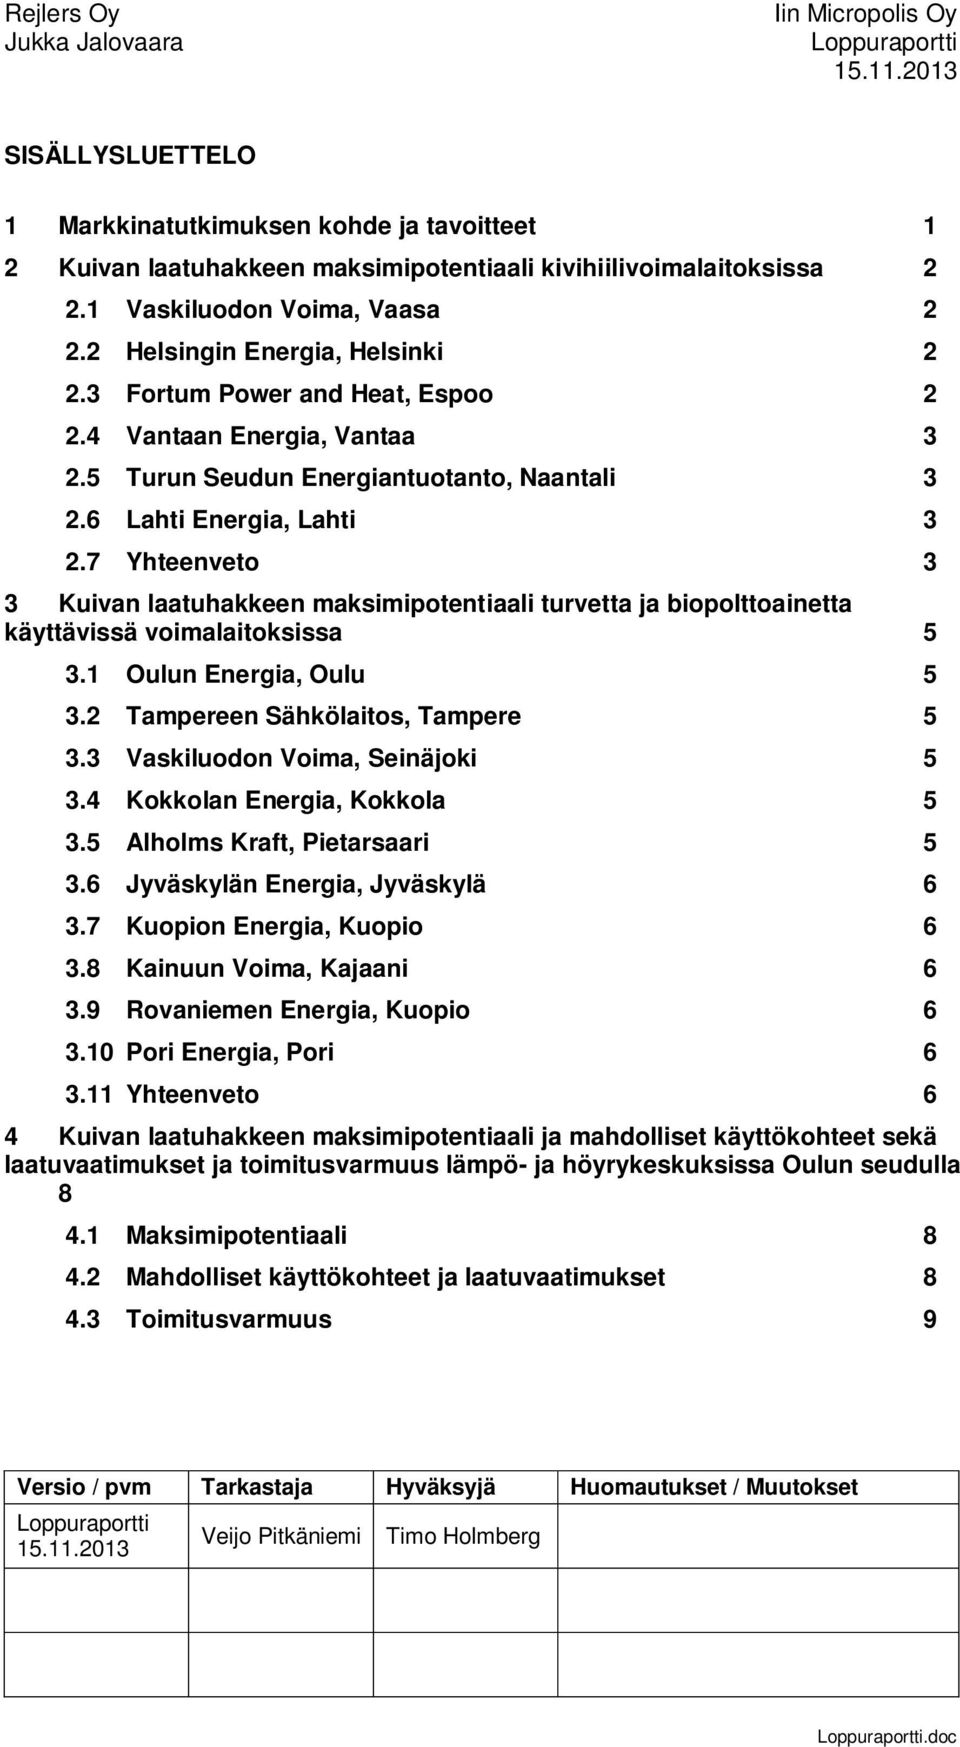 7 Yhteenveto 3 3 Kuivan laatuhakkeen maksimipotentiaali turvetta ja biopolttoainetta käyttävissä voimalaitoksissa 5 3.1 Oulun Energia, Oulu 5 3.2 Tampereen Sähkölaitos, Tampere 5 3.